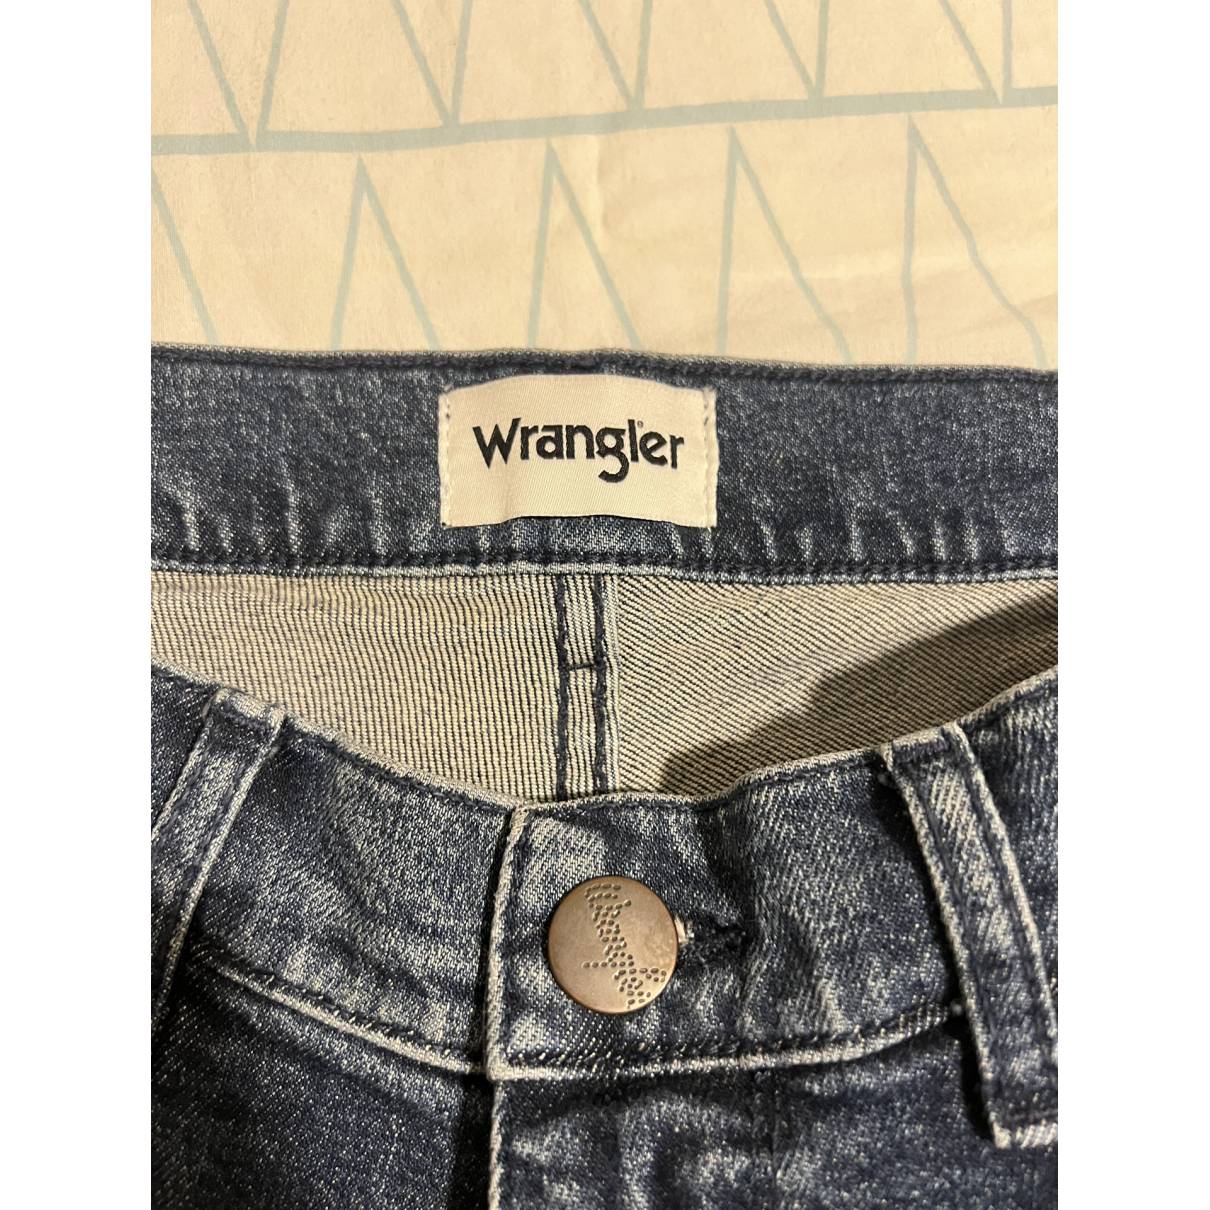 Buy Wrangler Slim jean online